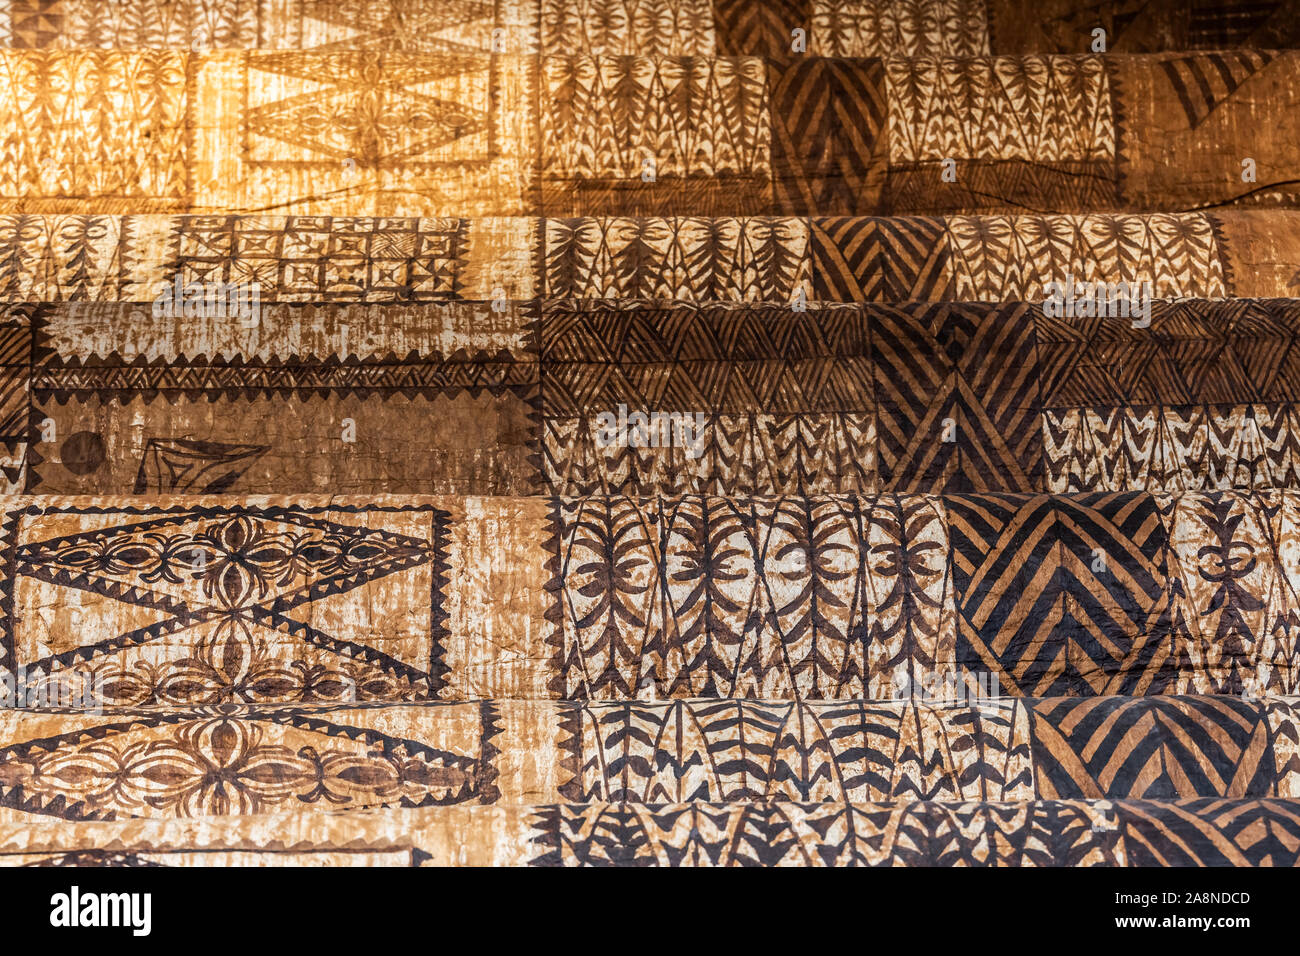 Corteccia di enorme panno modelli launima dettaglio da Tonga, Polinesia. I tessuti esposti a Basilea Museo delle Culture, Svizzera. Foto Stock